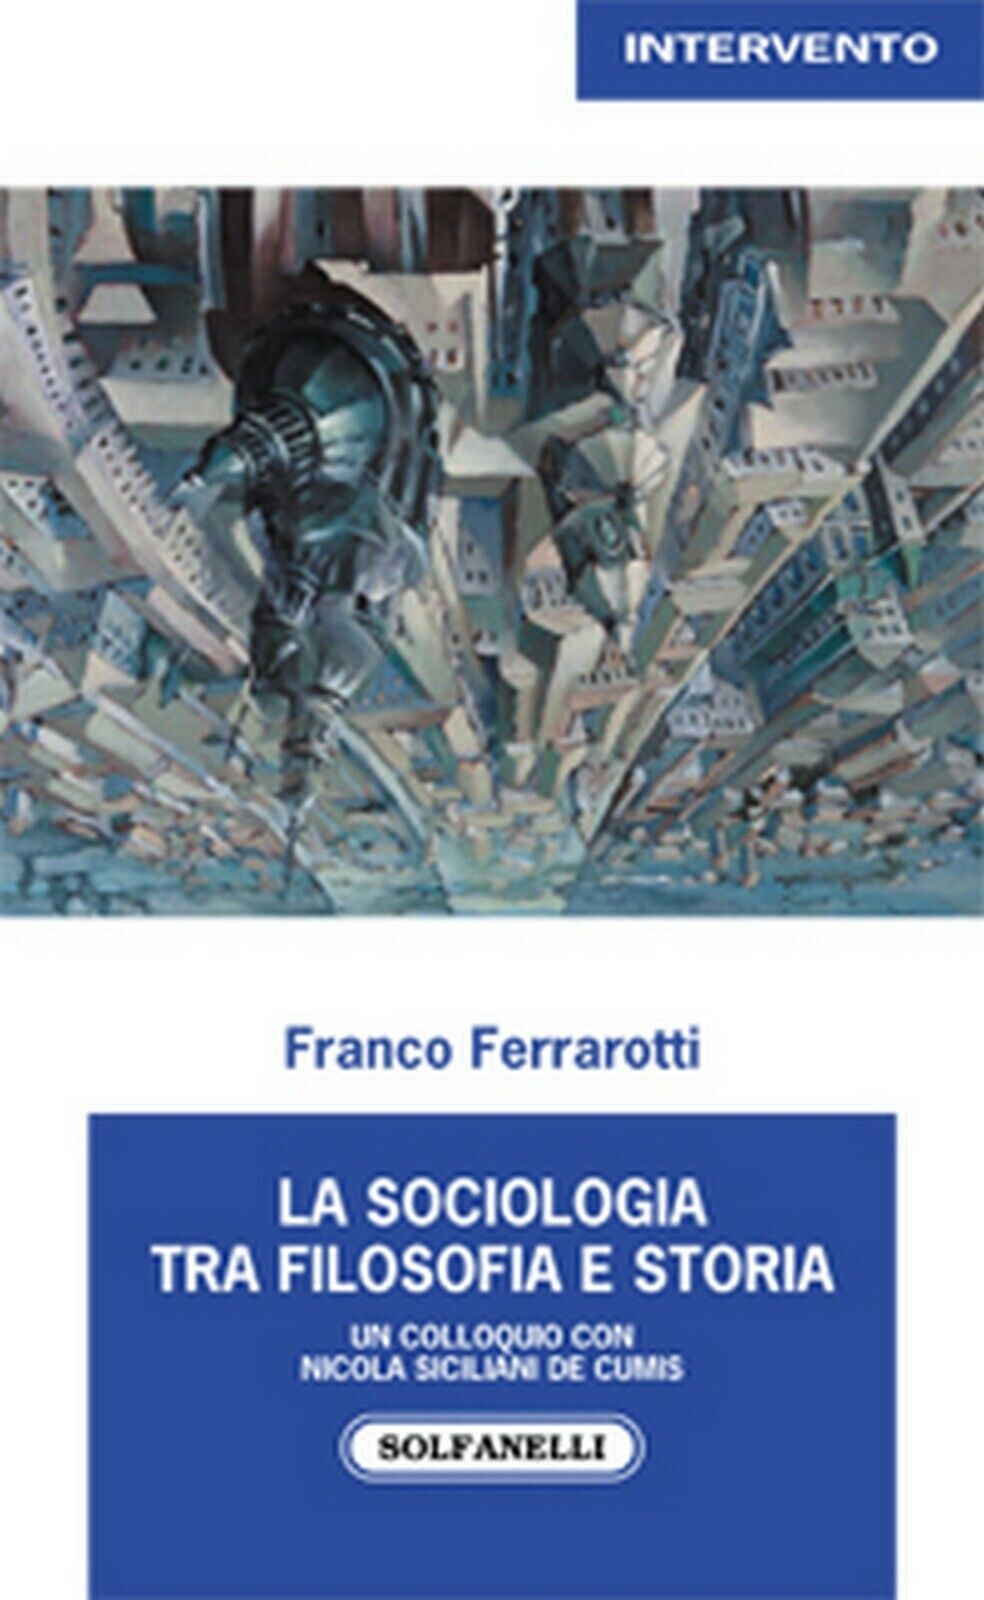 LA SOCIOLOGIA TRA FILOSOFIA E STORIA  di Franco Ferrarotti,  Solfanelli Edizioni